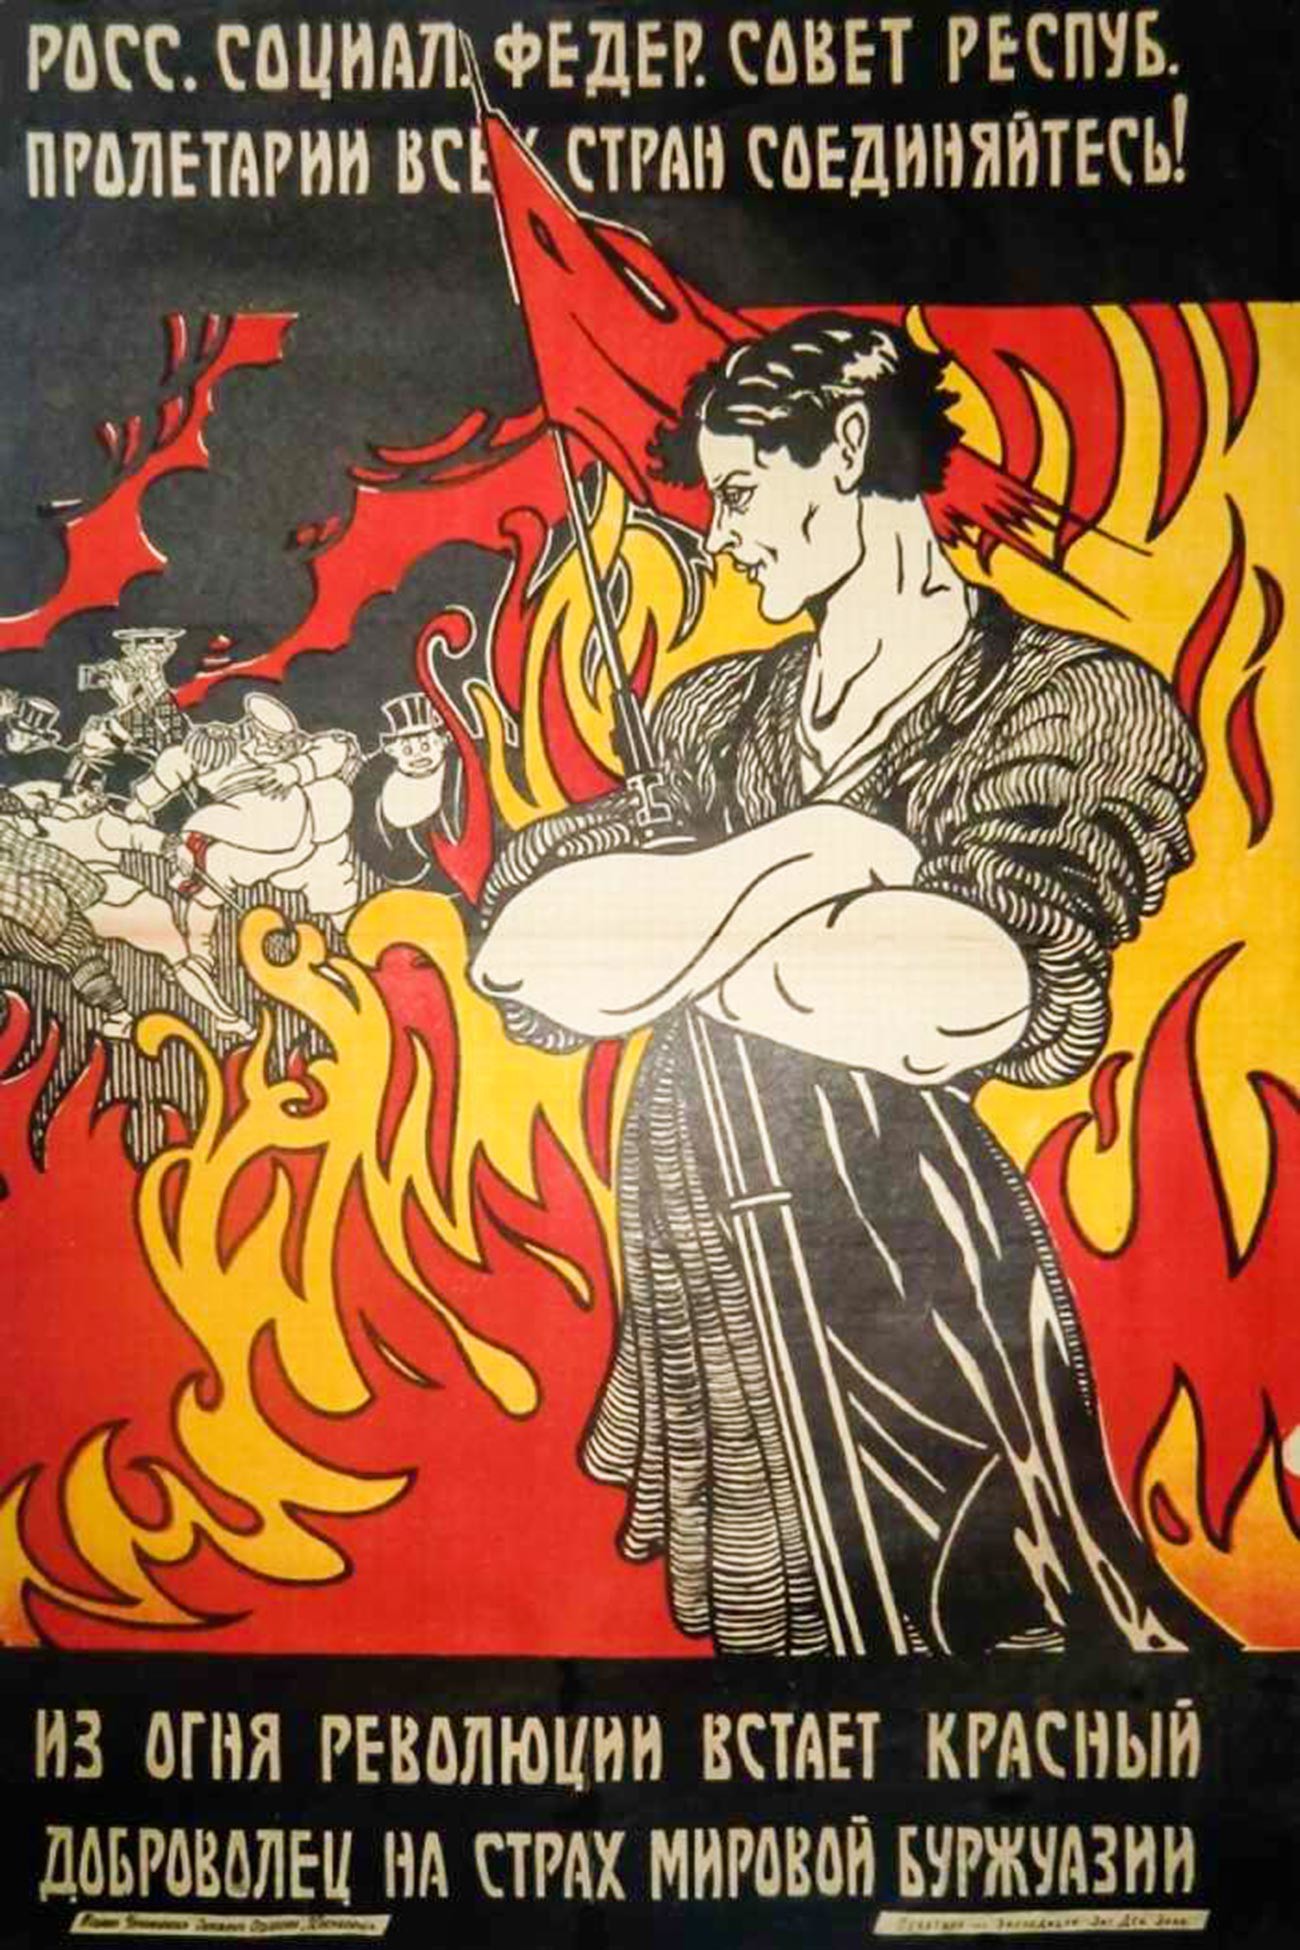 Мировая революция 1920. Пожар мировой революции. Огонь мировой революции. Революционные плакаты. Советские революционные плакаты.